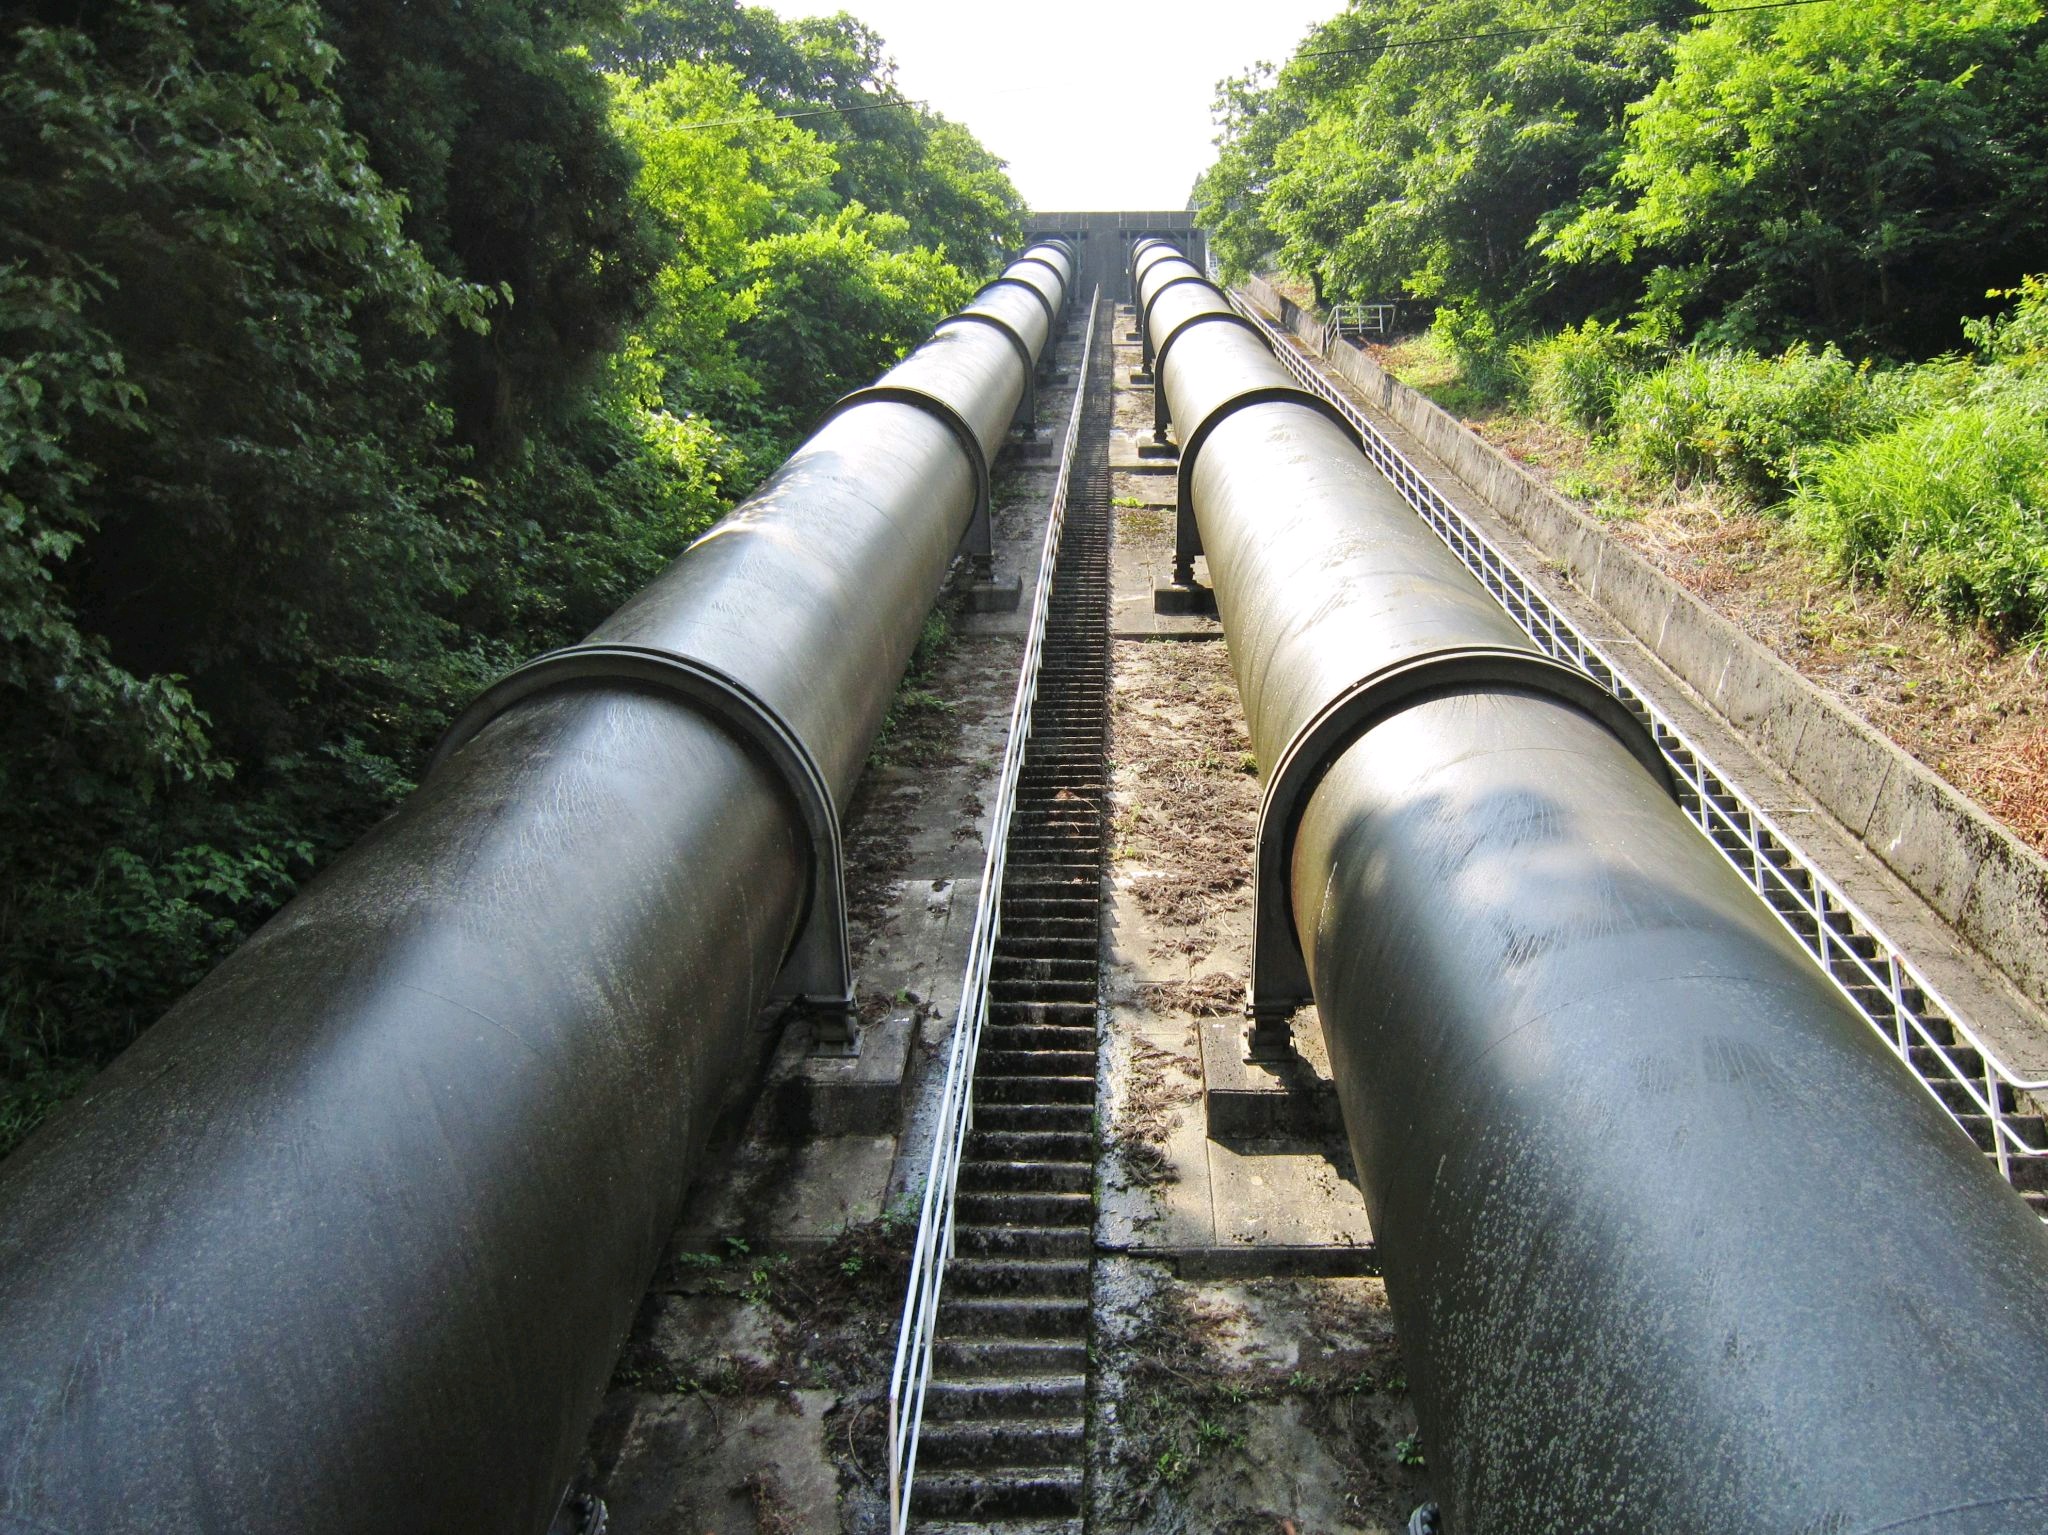 Nigerian oil pipeline